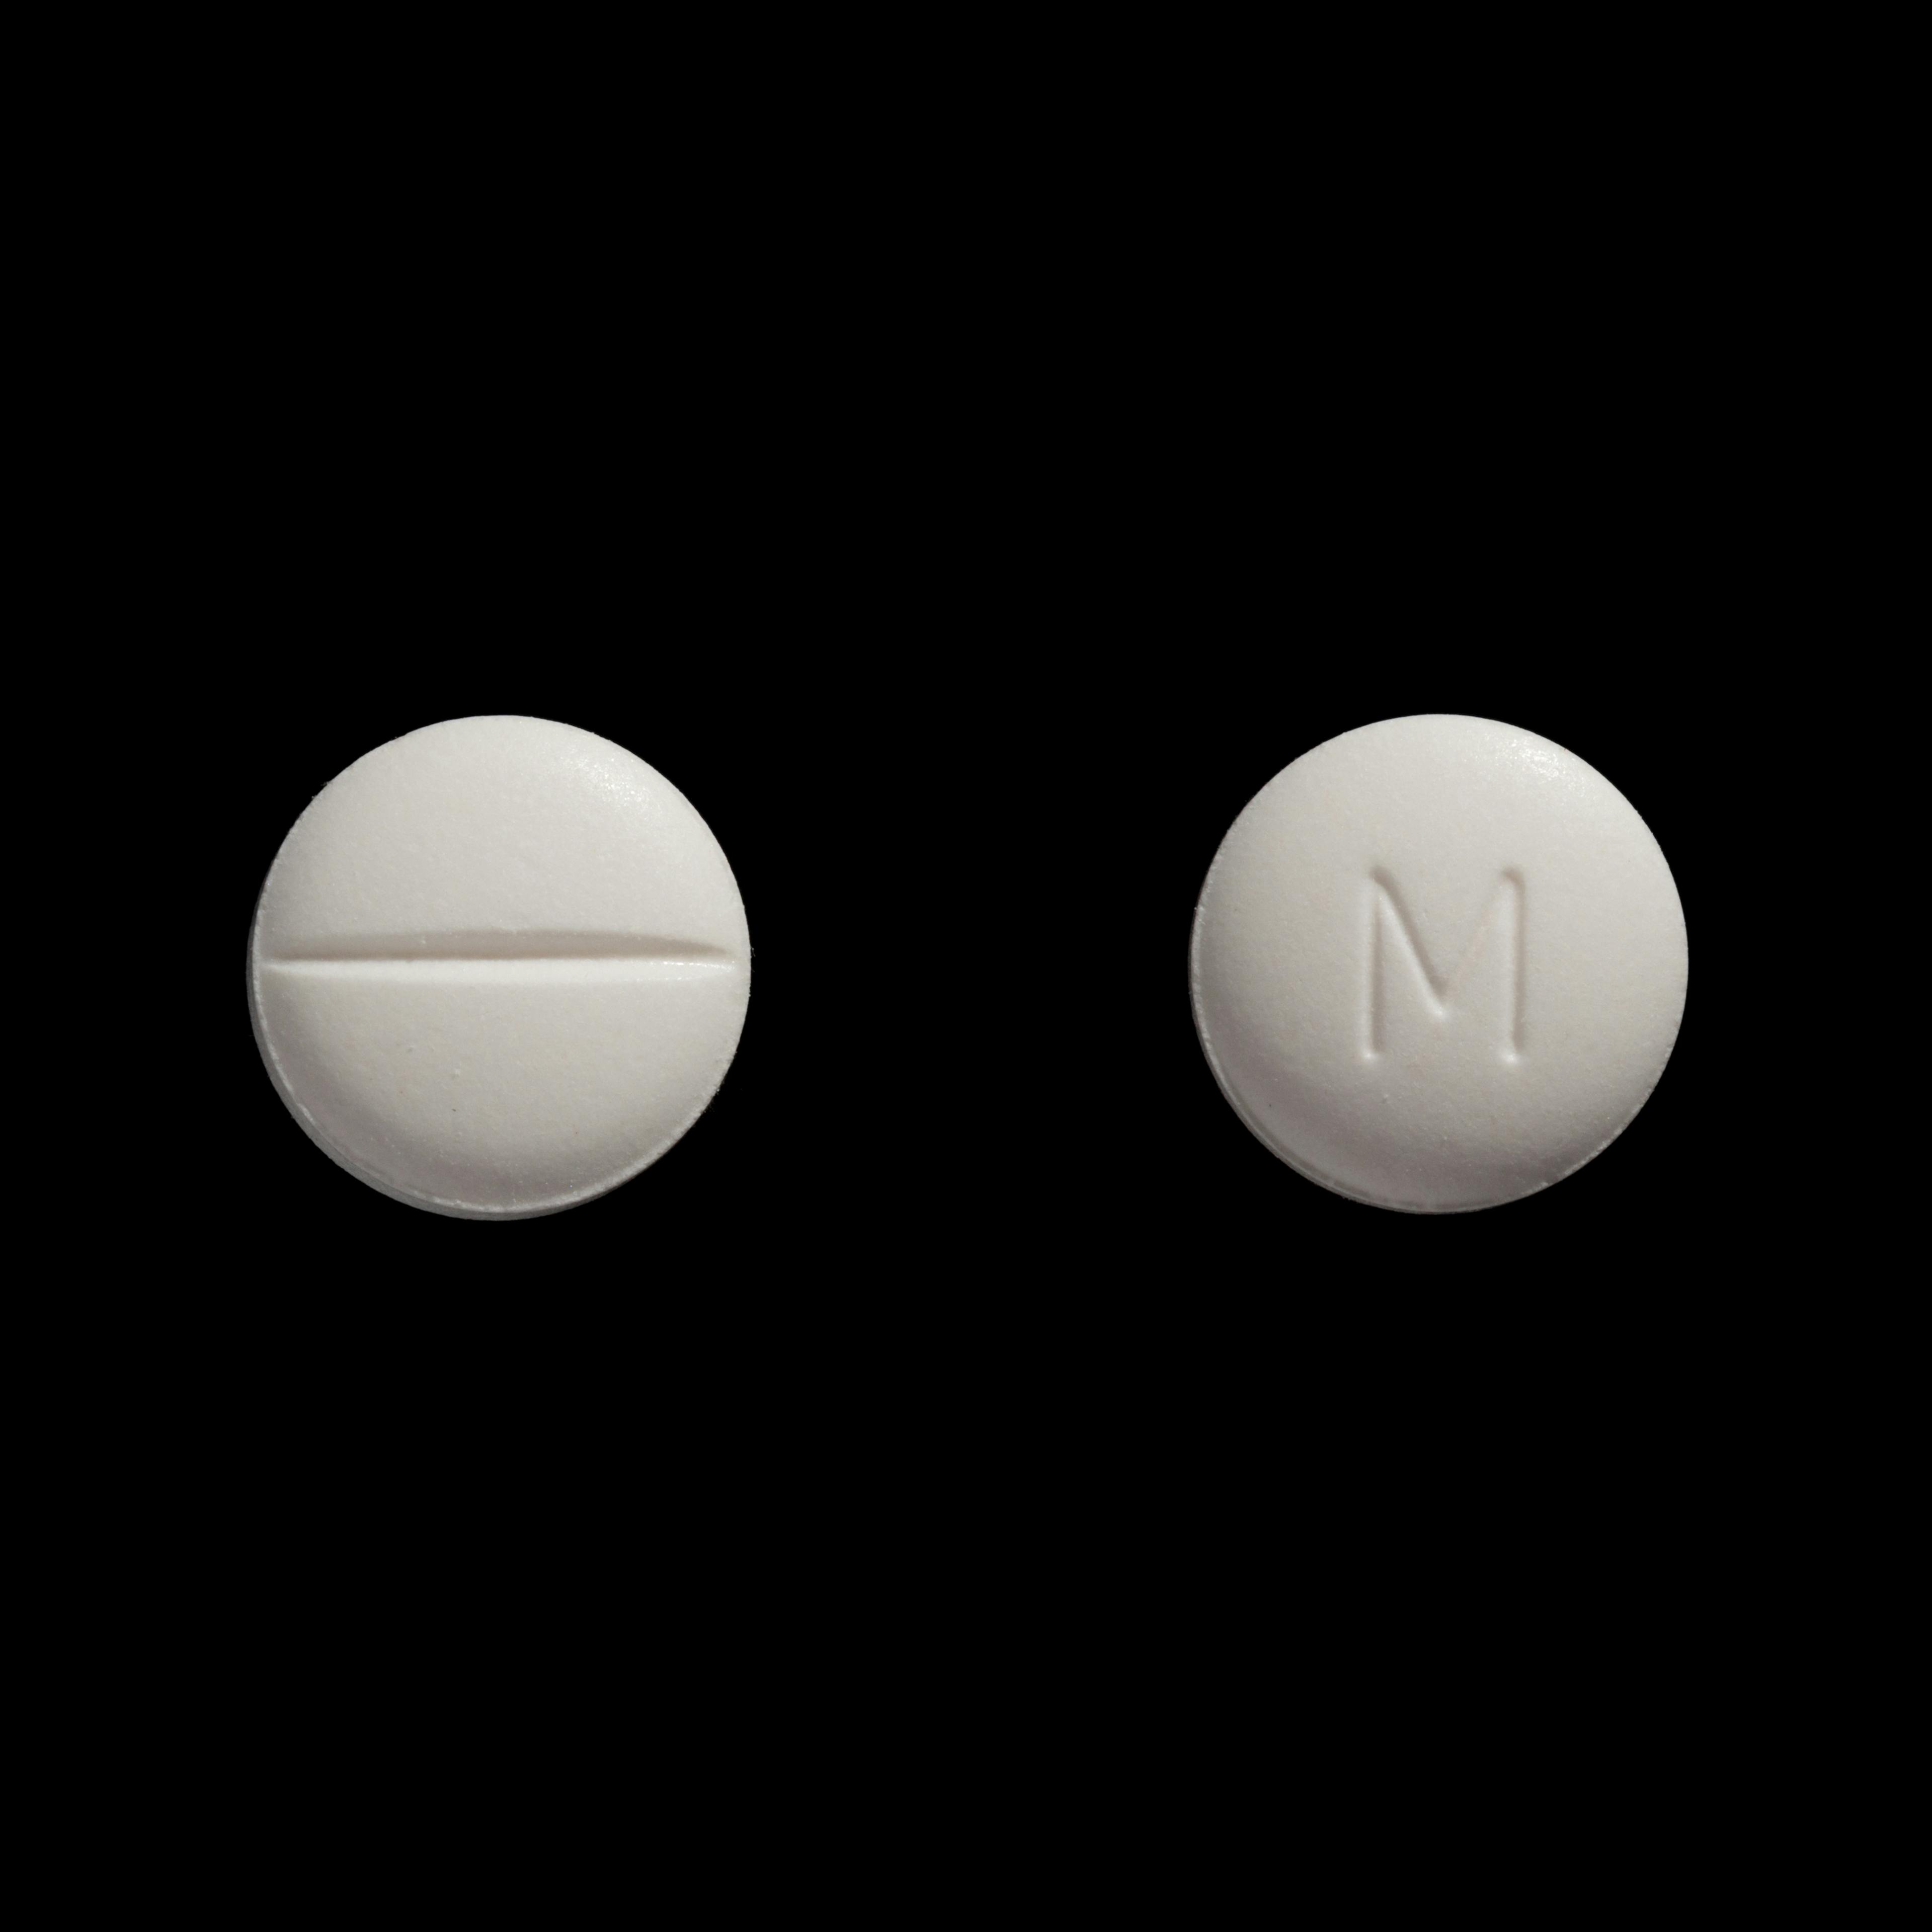 Metoprolin 100 mg töflur